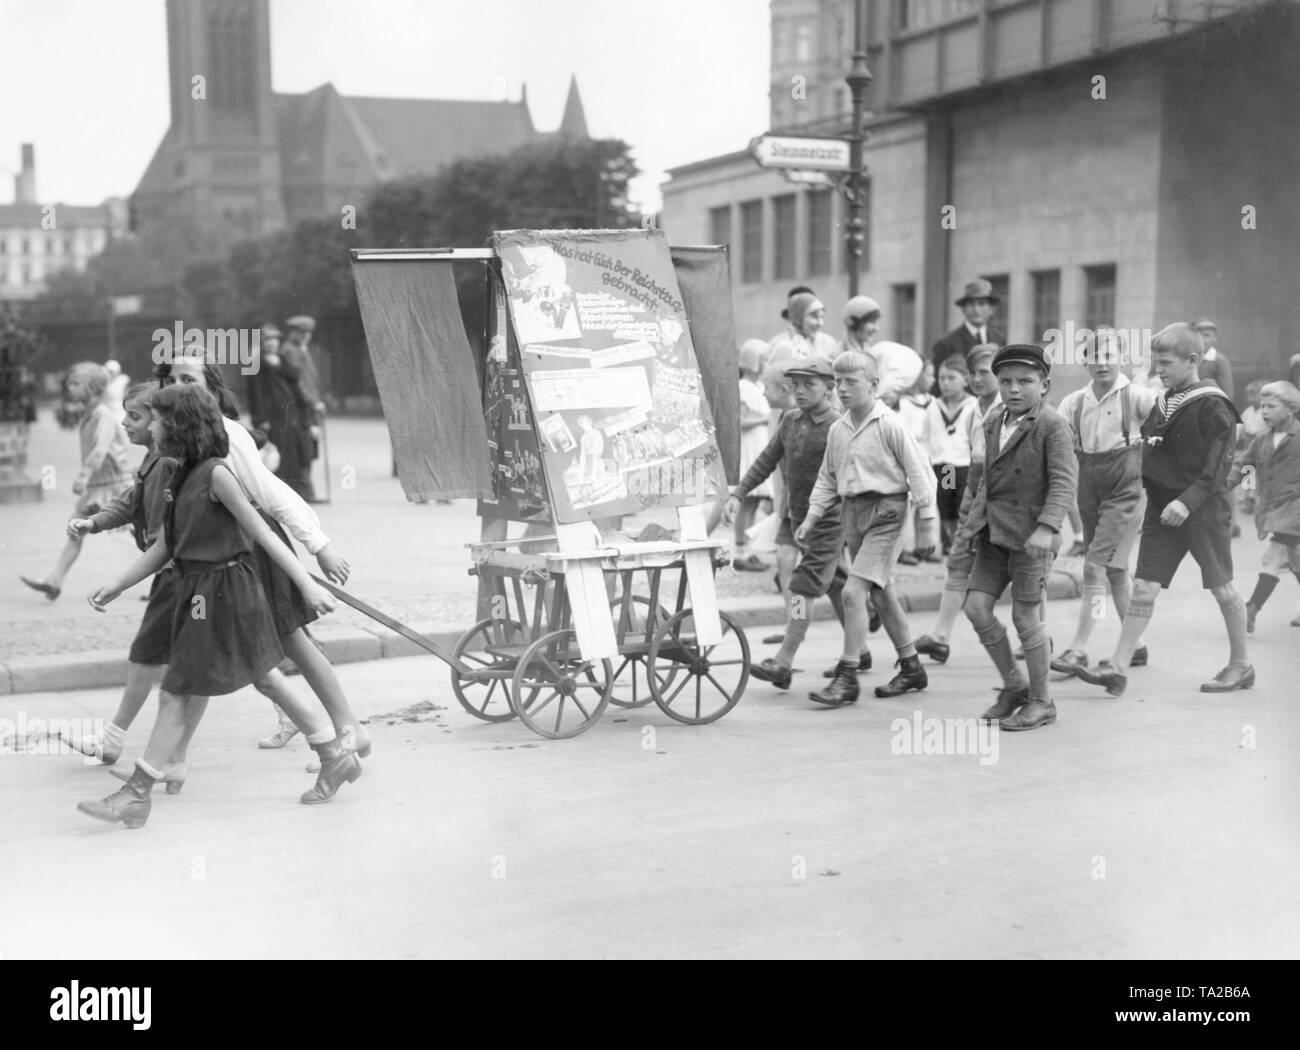 Kinder ziehen einen kleinen Wagen mit Poster und Banner der KPD (Kommunistische Partei Deutschlands). Auf dem Plakat sind die Sätze "Was Sie den Reichstag gebracht.' und 'Für einen sowjetischen Deutschland'. Stockfoto